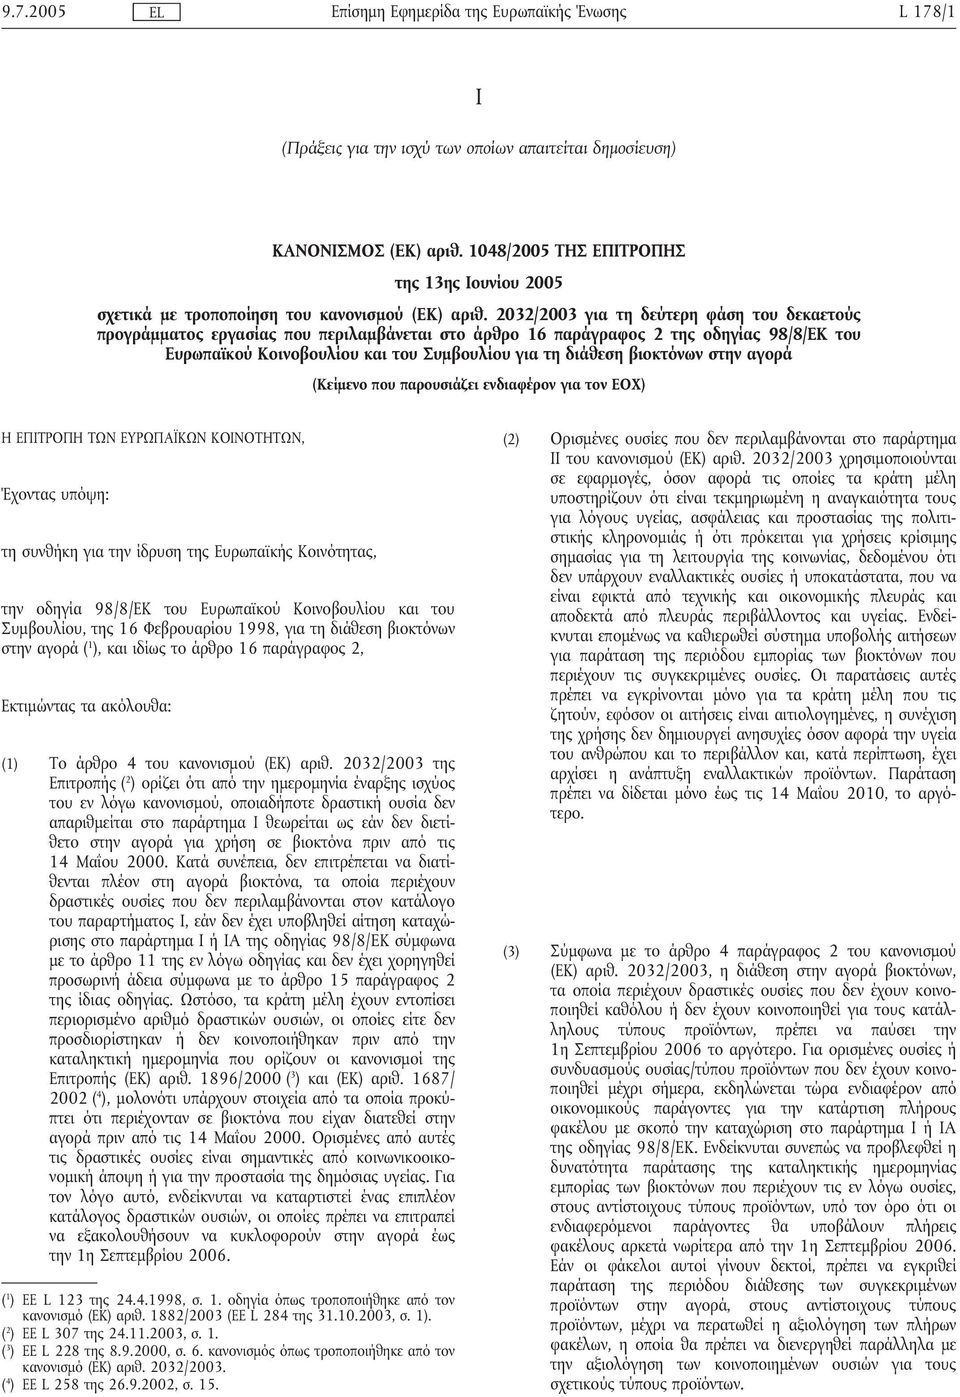 βιοκτόνων στην αγορά (Κείµενο που παρουσιάζει ενδιαφέρον για τον ΕΟΧ) Η ΕΠΙΤΡΟΠΗ ΤΩΝ ΕΥΡΩΠΑΪΚΩΝ ΚΟΙΝΟΤΗΤΩΝ, Έχοντας υπόψη: τη συνθήκη για την ίδρυση της Ευρωπαϊκής Κοινότητας, την οδηγία 98/8/ΕΚ του